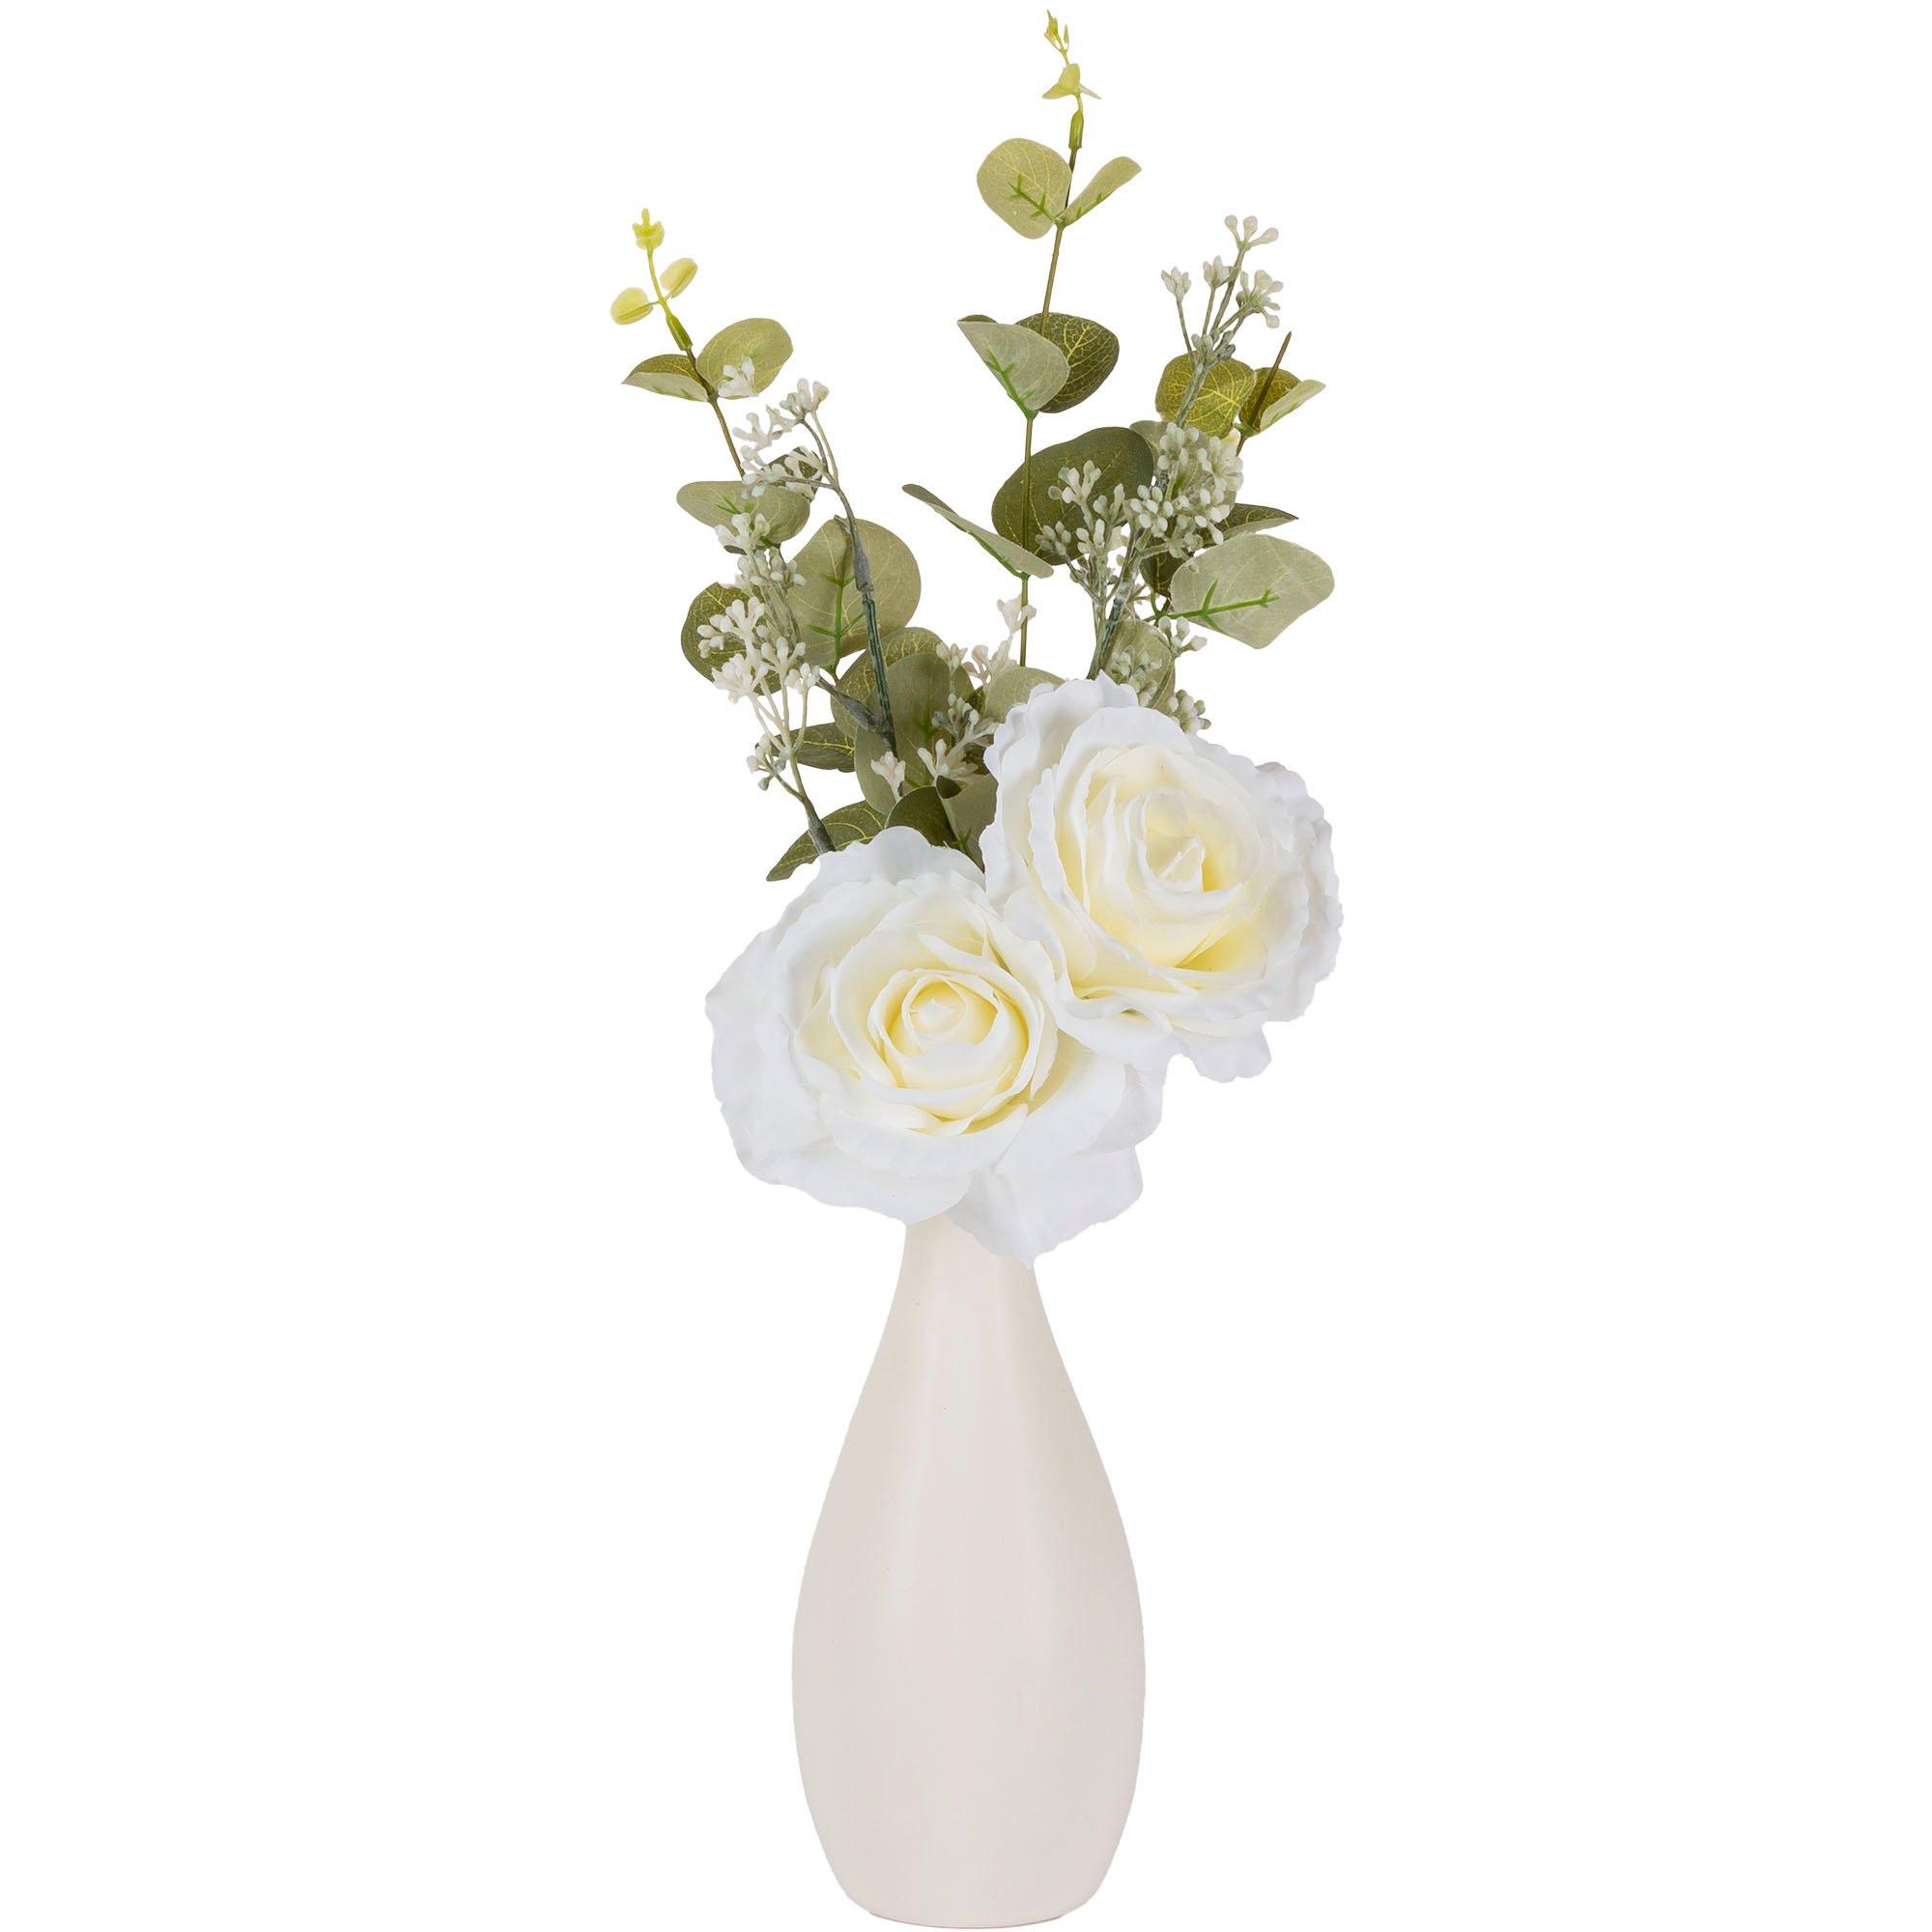 White Roses & Greenery in White Ceramic Vase, 17in